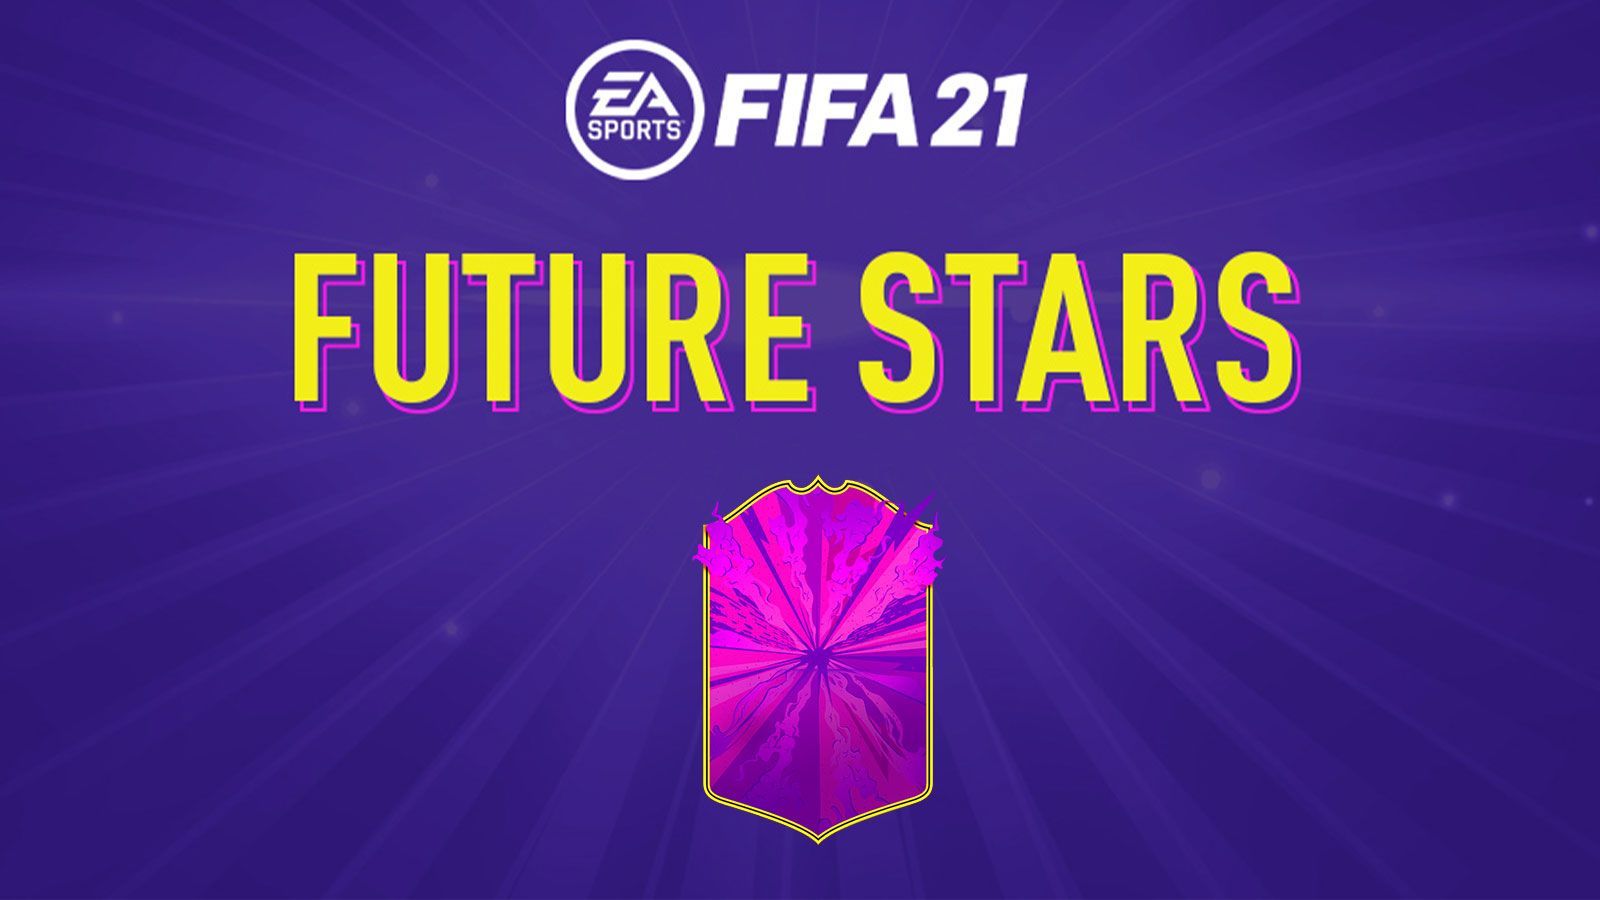 Les Futures Stars bientôt sur FIFA 21 : date de sortie et prédictions - Dexerto.fr